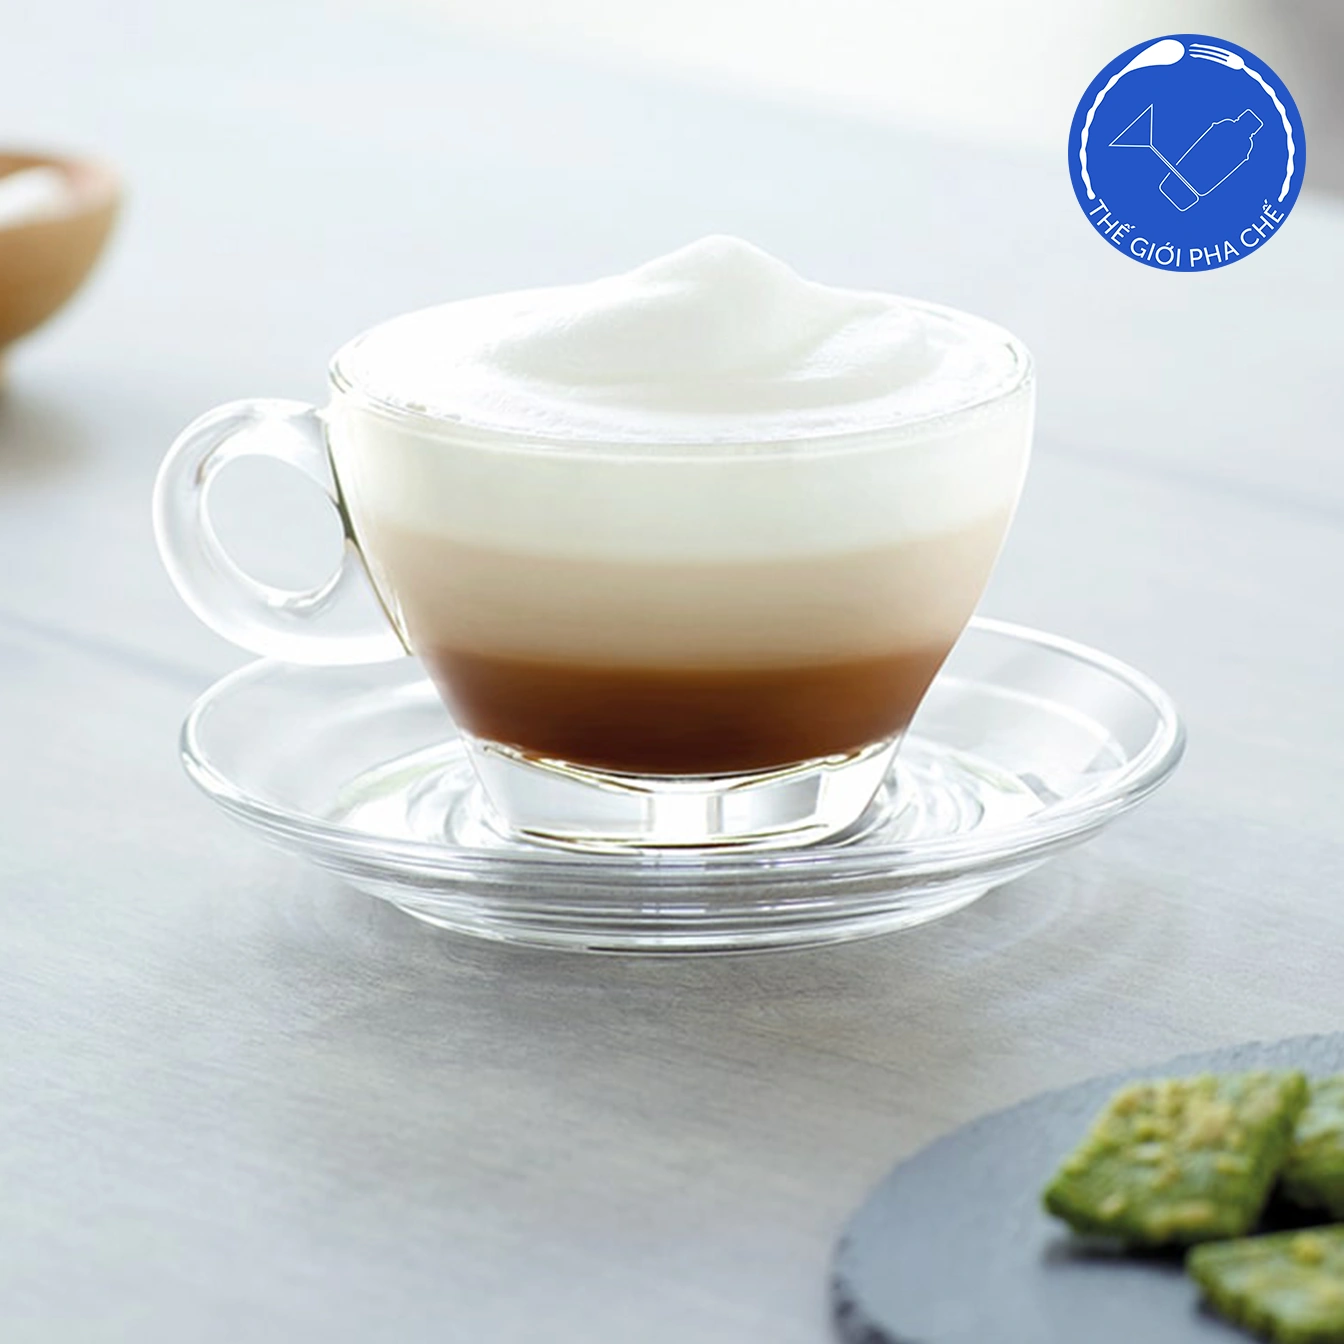 Ly thuỷ tinh Ocean Caffe Latte (Bộ 6c kèm đĩa) 260ml - P02443 - TH Thái Lan